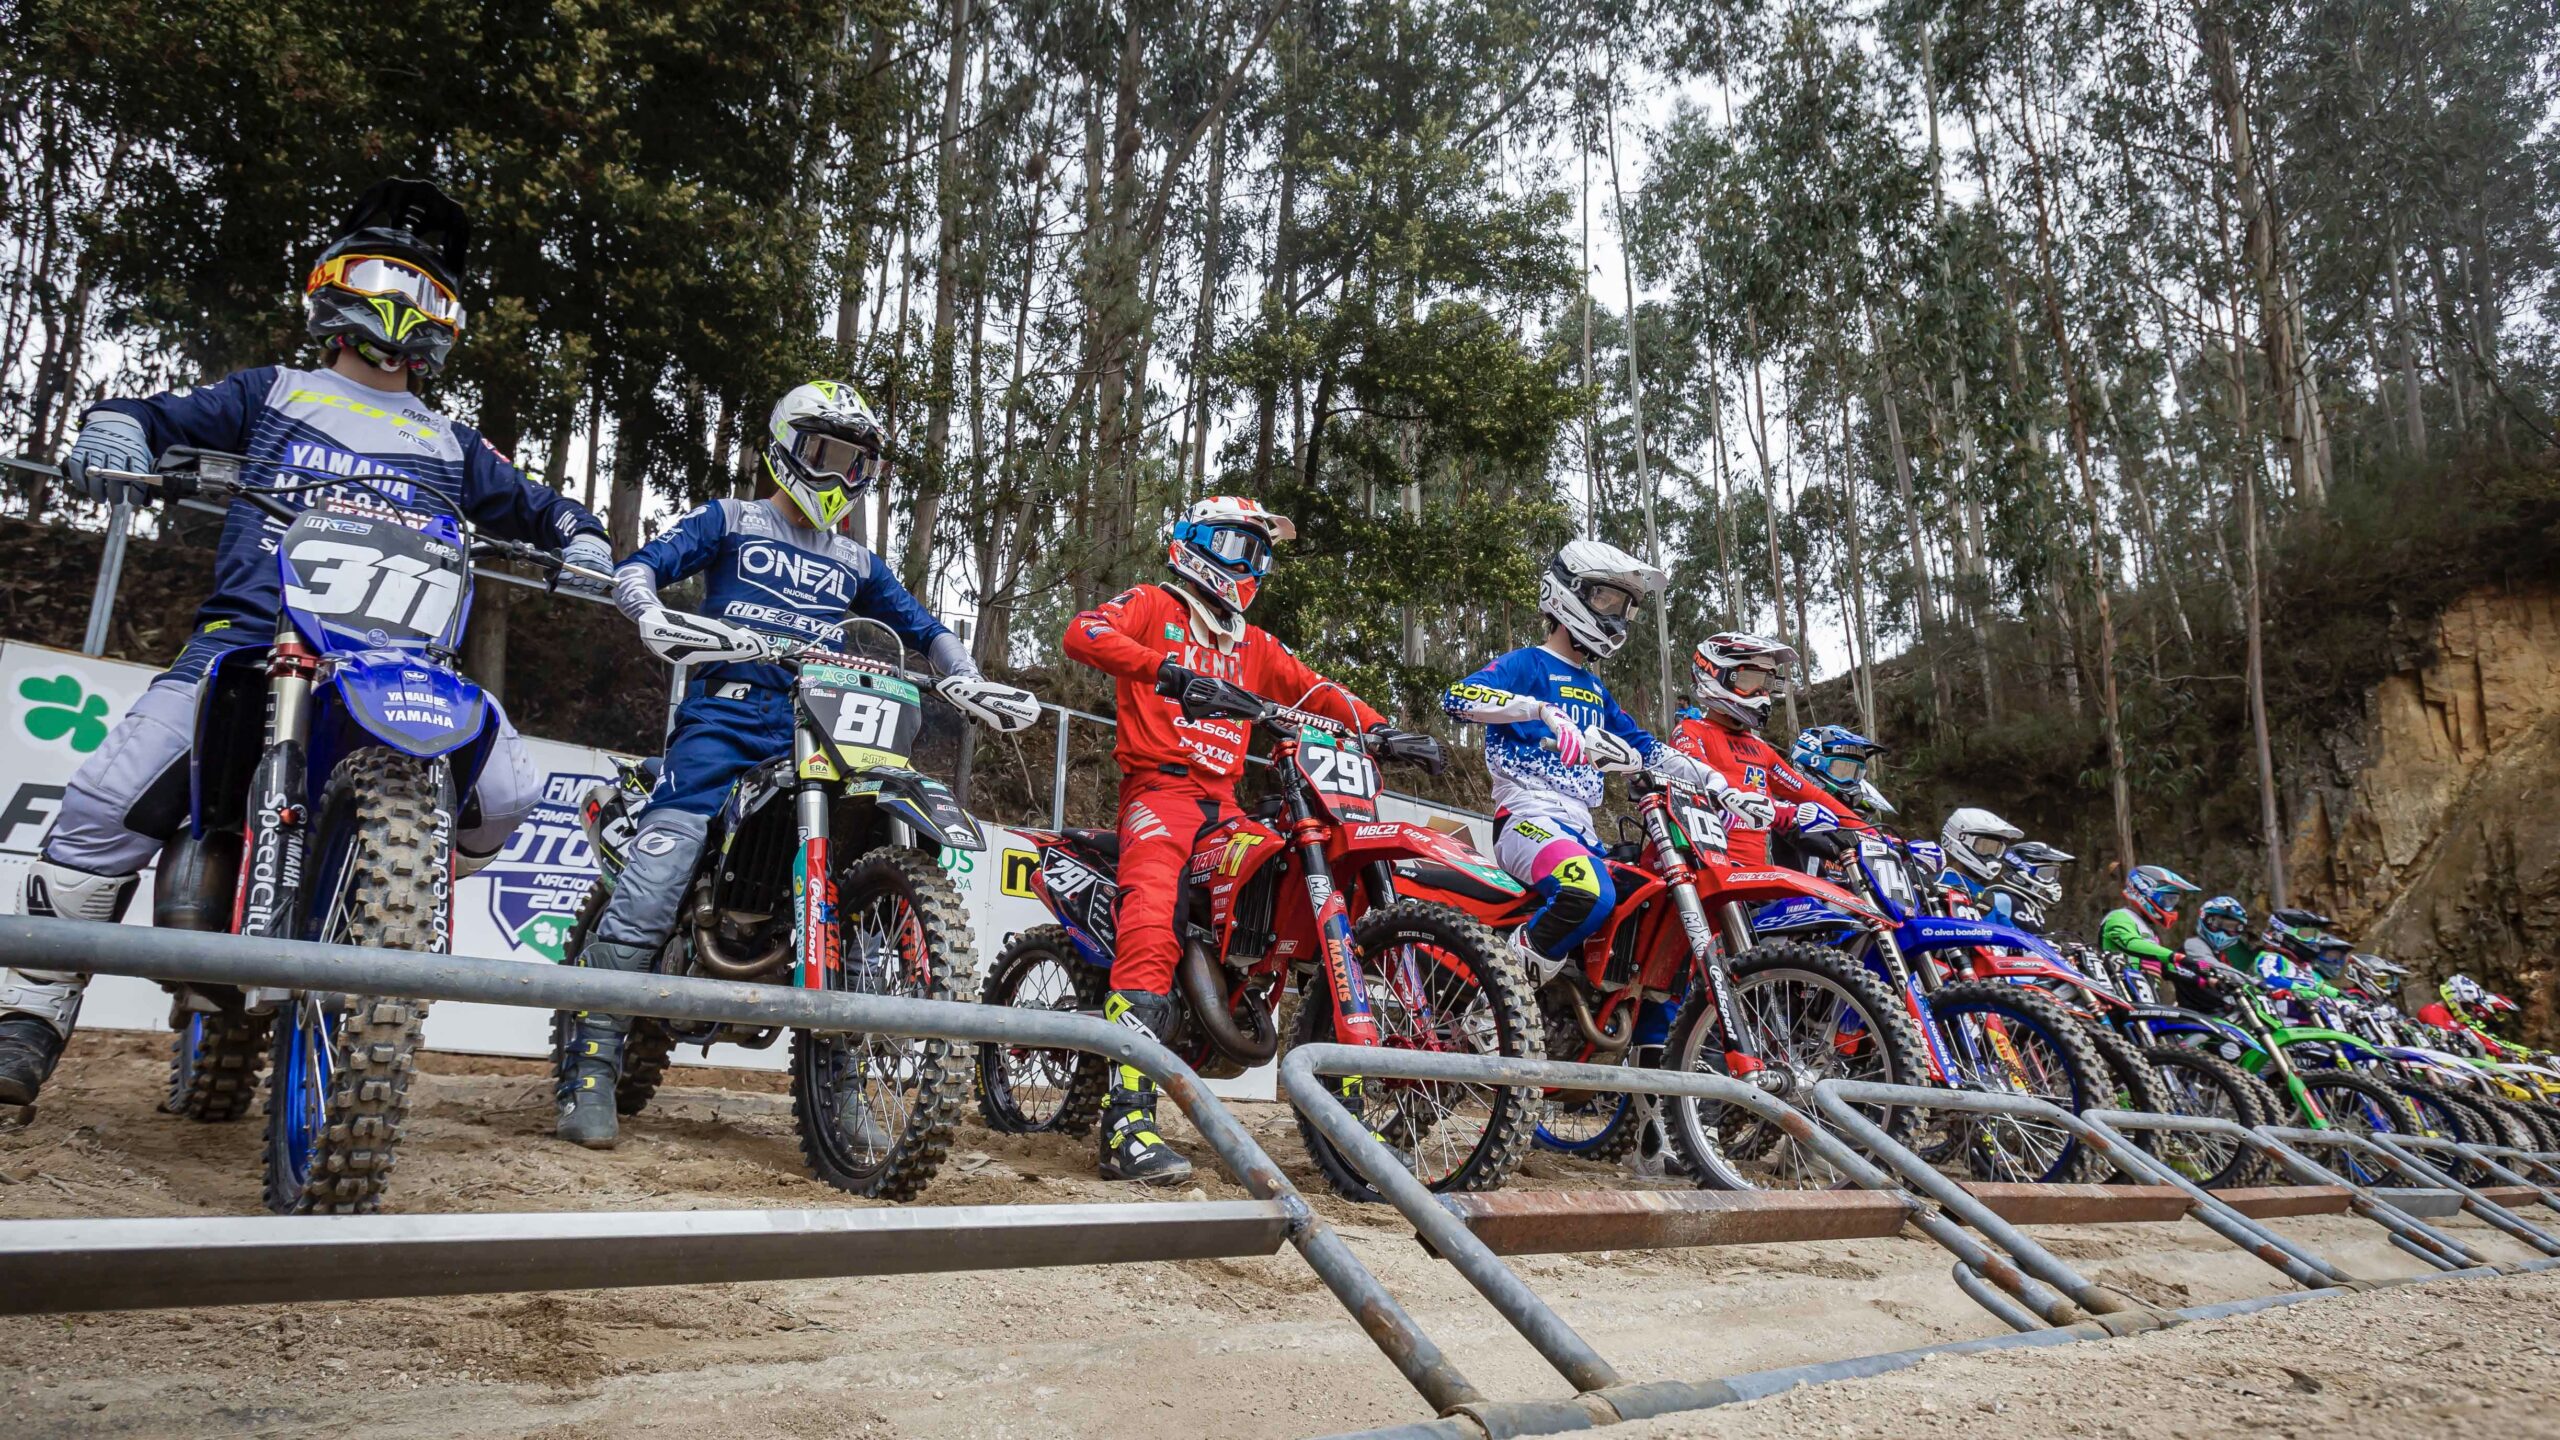 CN Motocross: Casais de São Quintino com treinos livres este sábado thumbnail